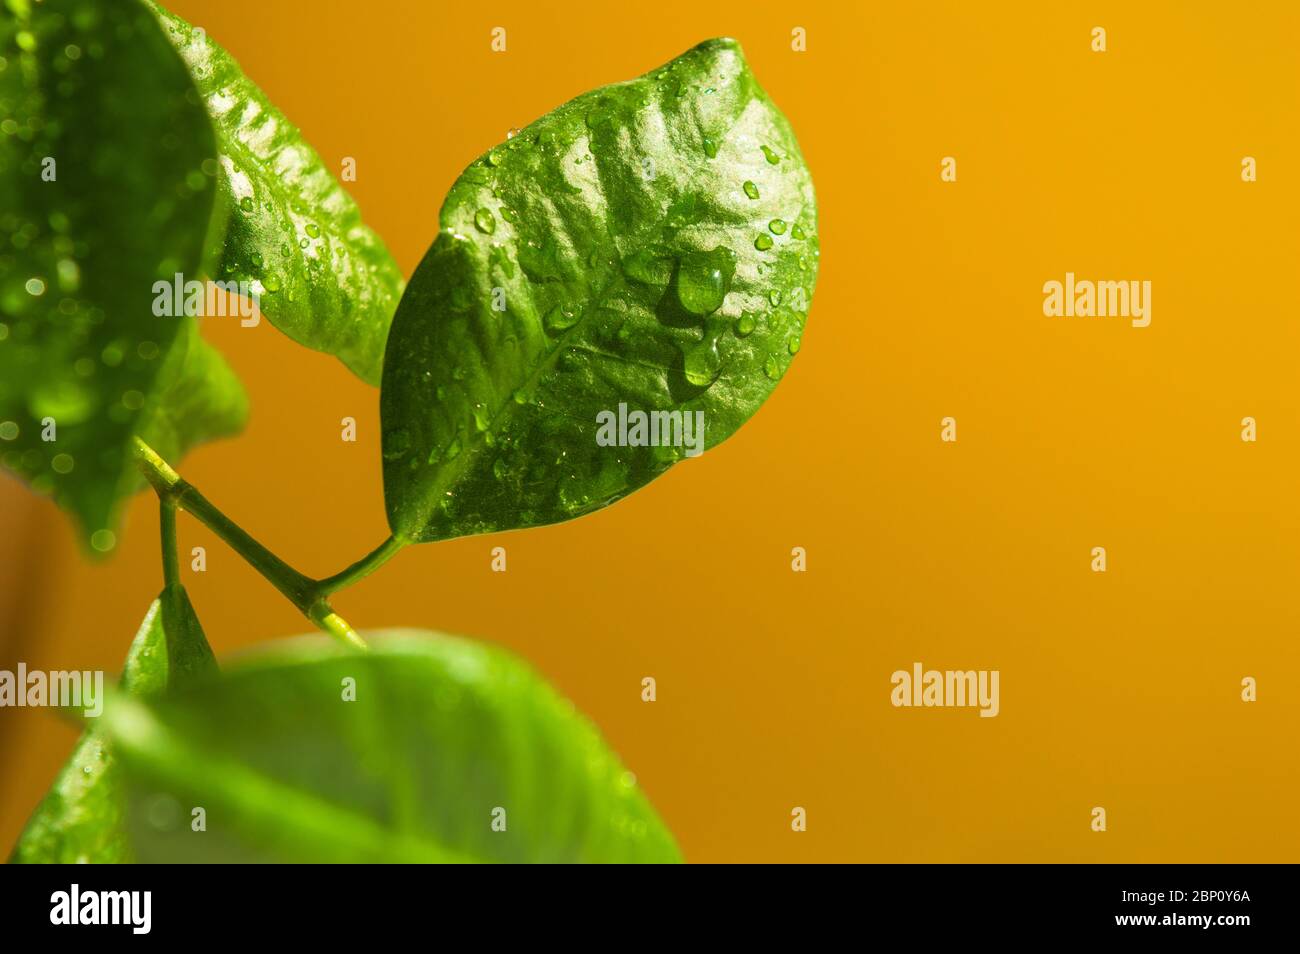 Vert aiguisez les feuilles de ficus bonsai avec de minuscules gouttes d'eau et d'autres feuilles floues sur le coin gauche sur le fond jaune foncé et lumineux. Ensoleillé Banque D'Images